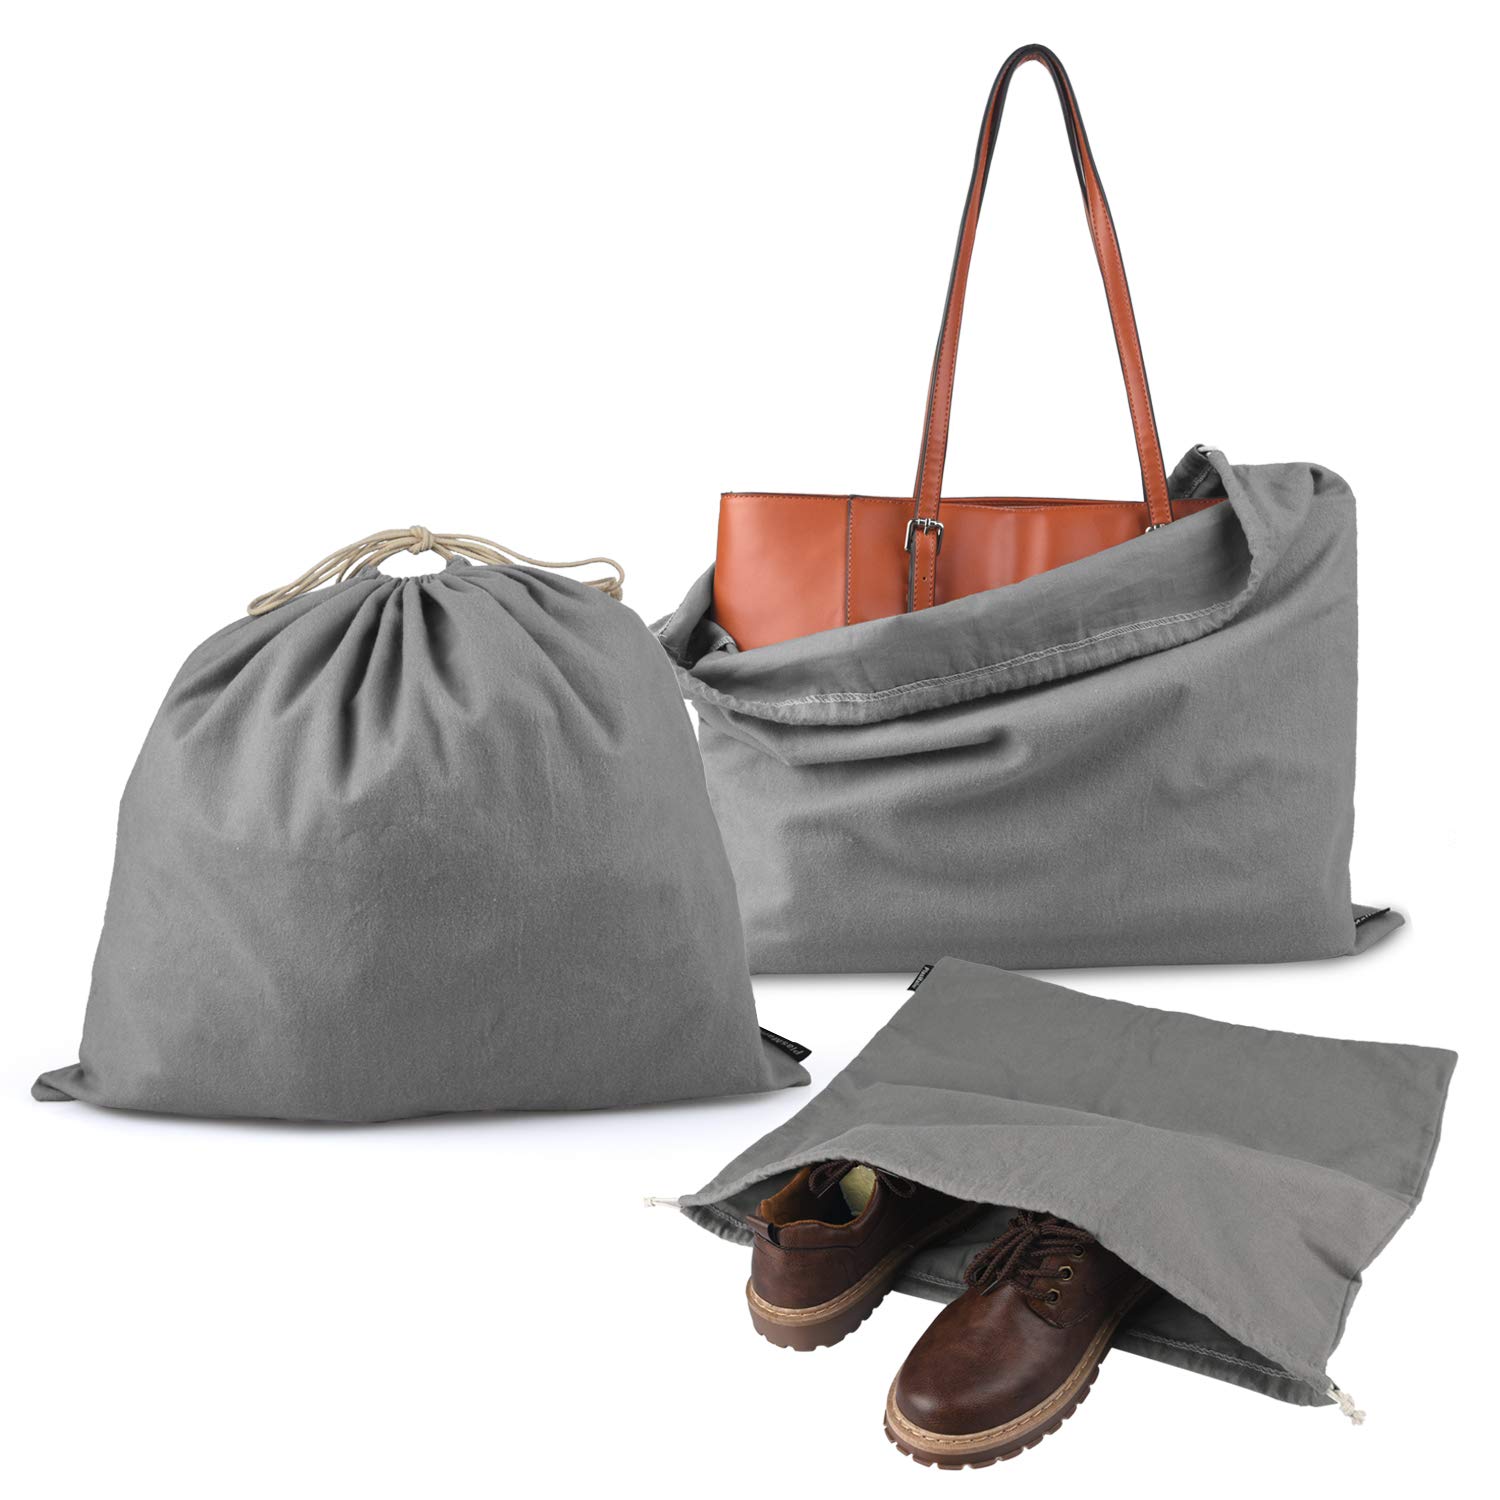 Grey Handbags & Purses